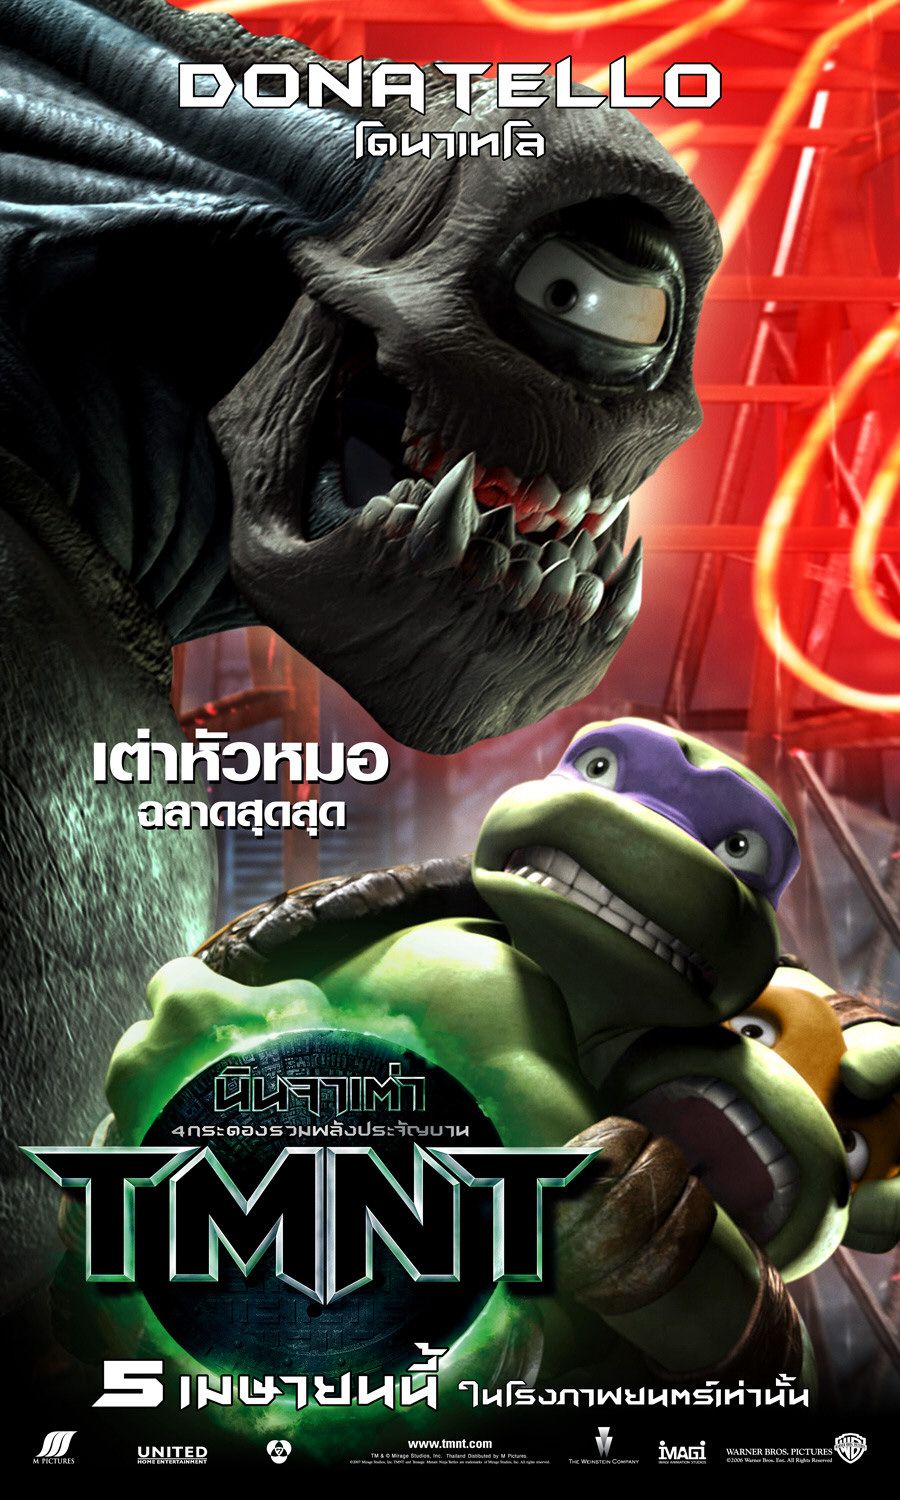 Extra Large Movie Poster Image for Teenage Mutant Ninja Turtles (#9 of 16)